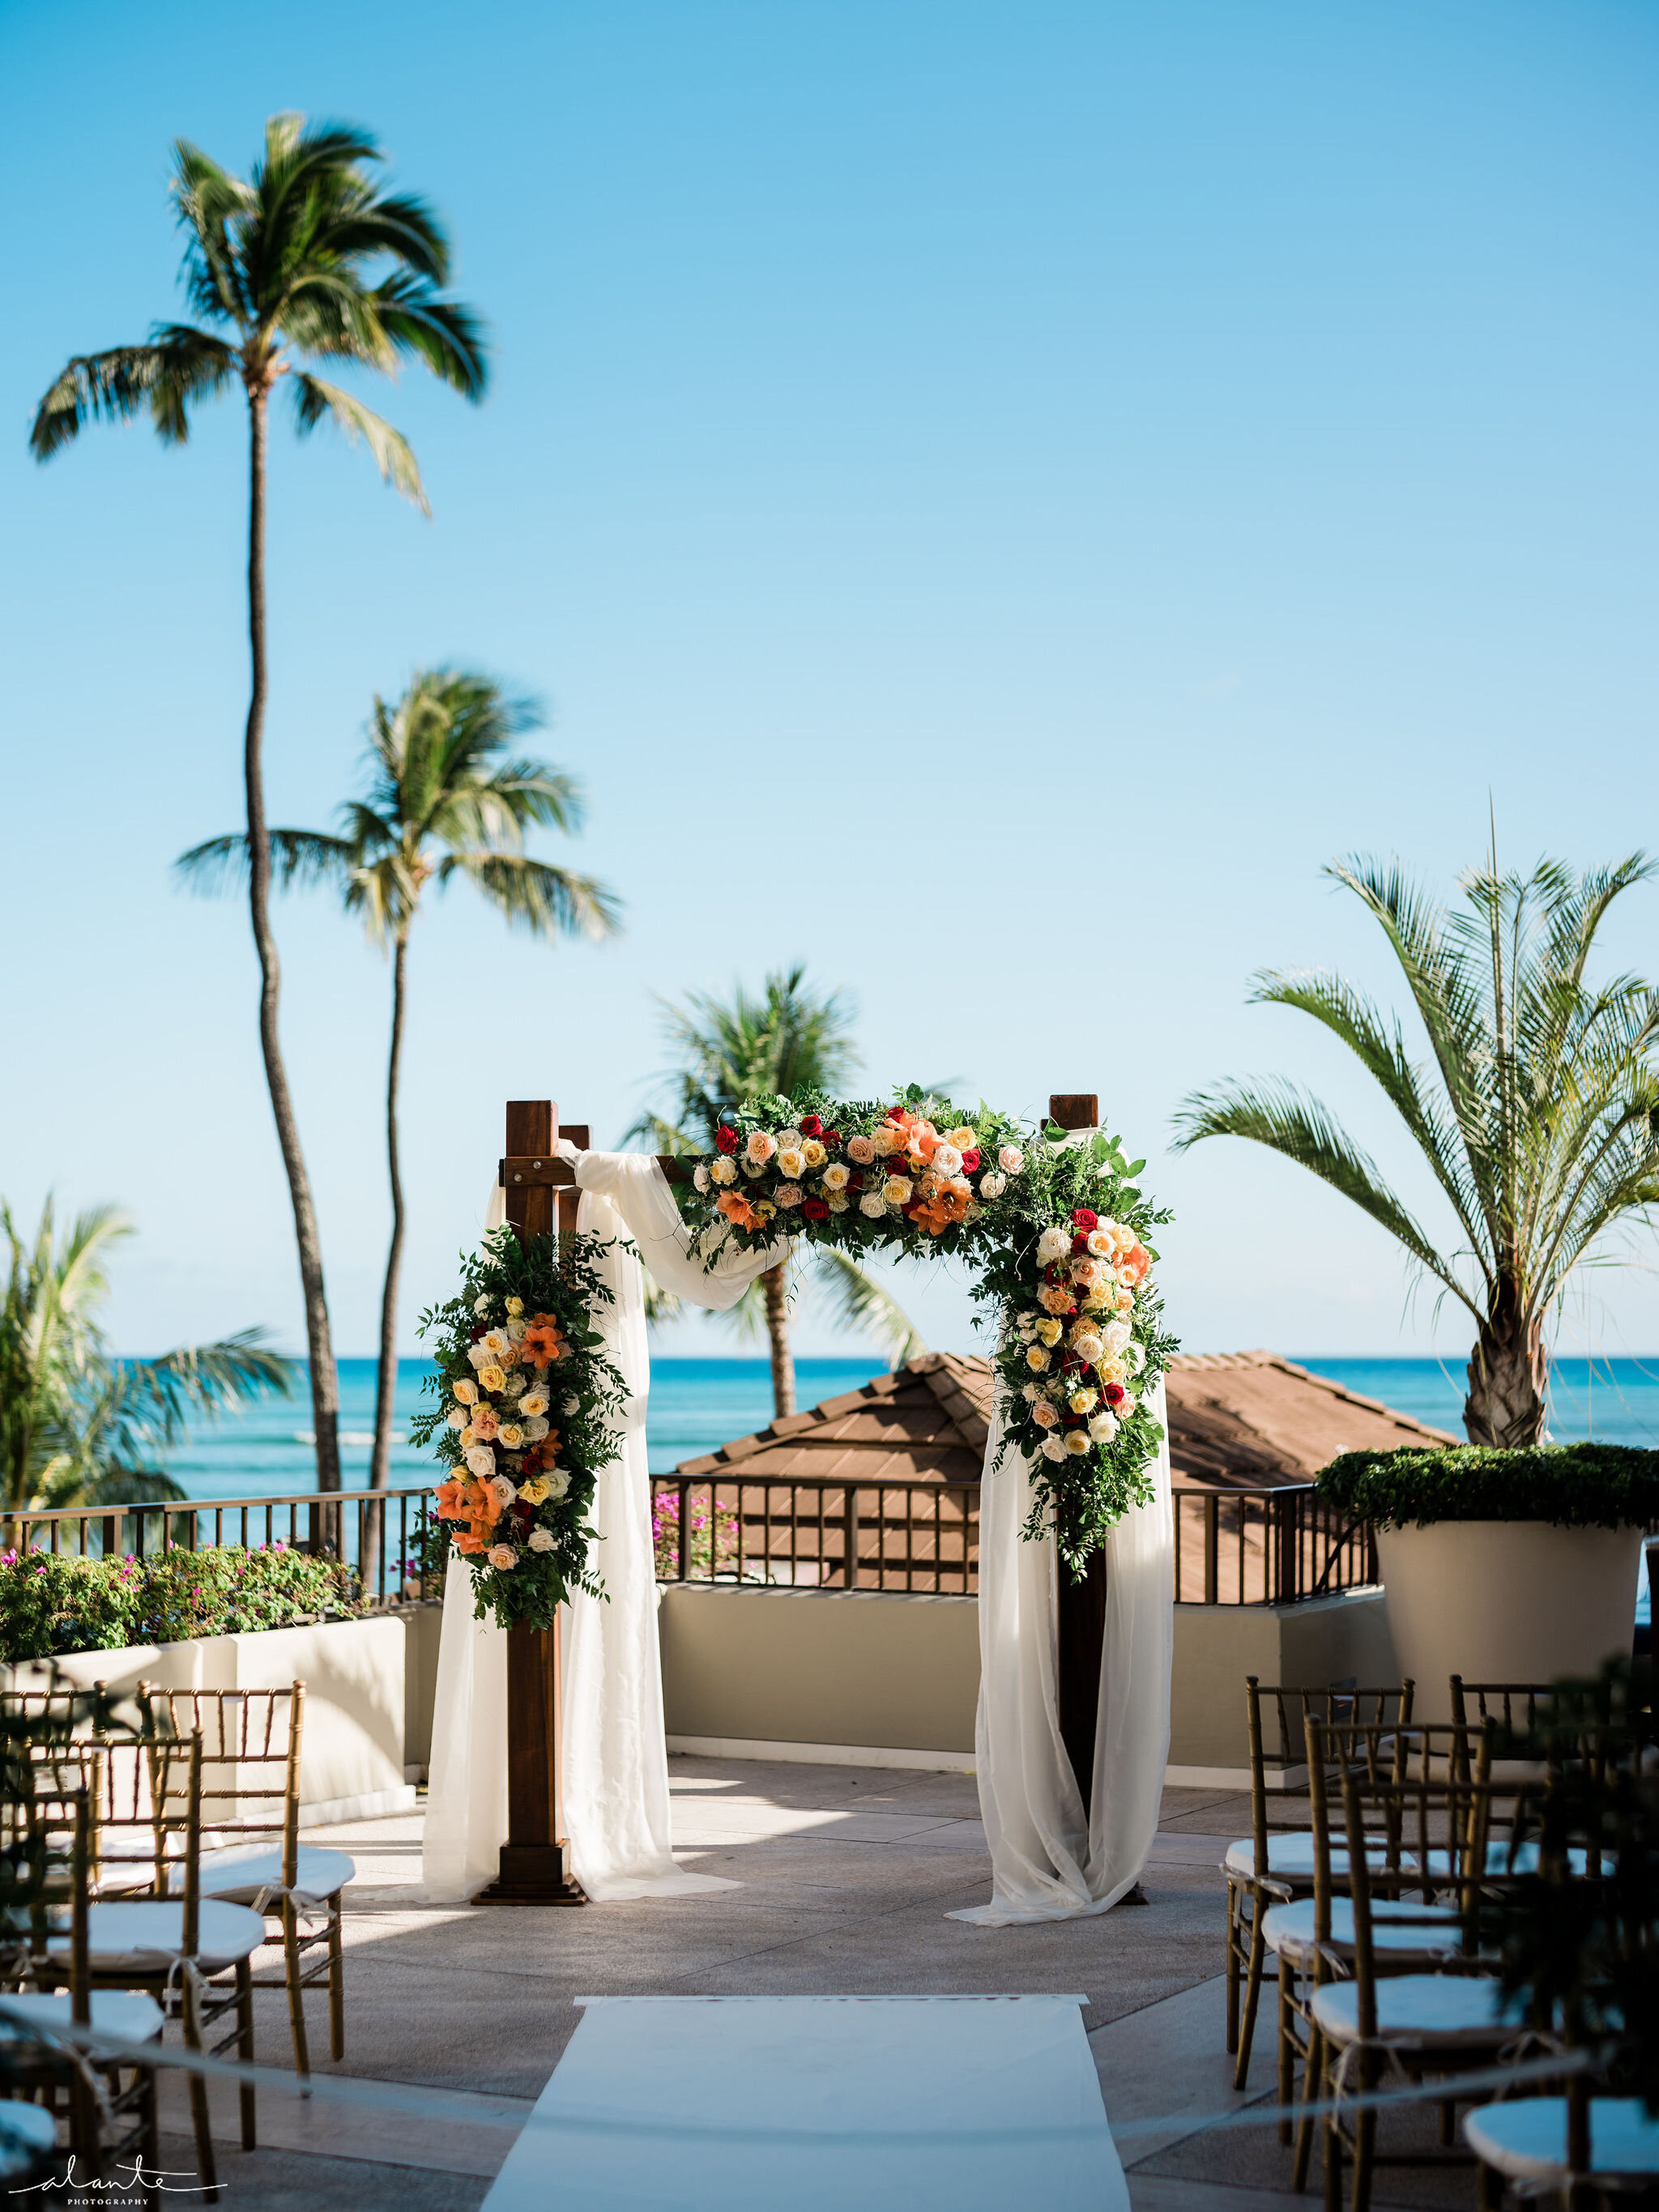 Alante-Photography-Hawaii-Honolulu-Wedding-035.jpg